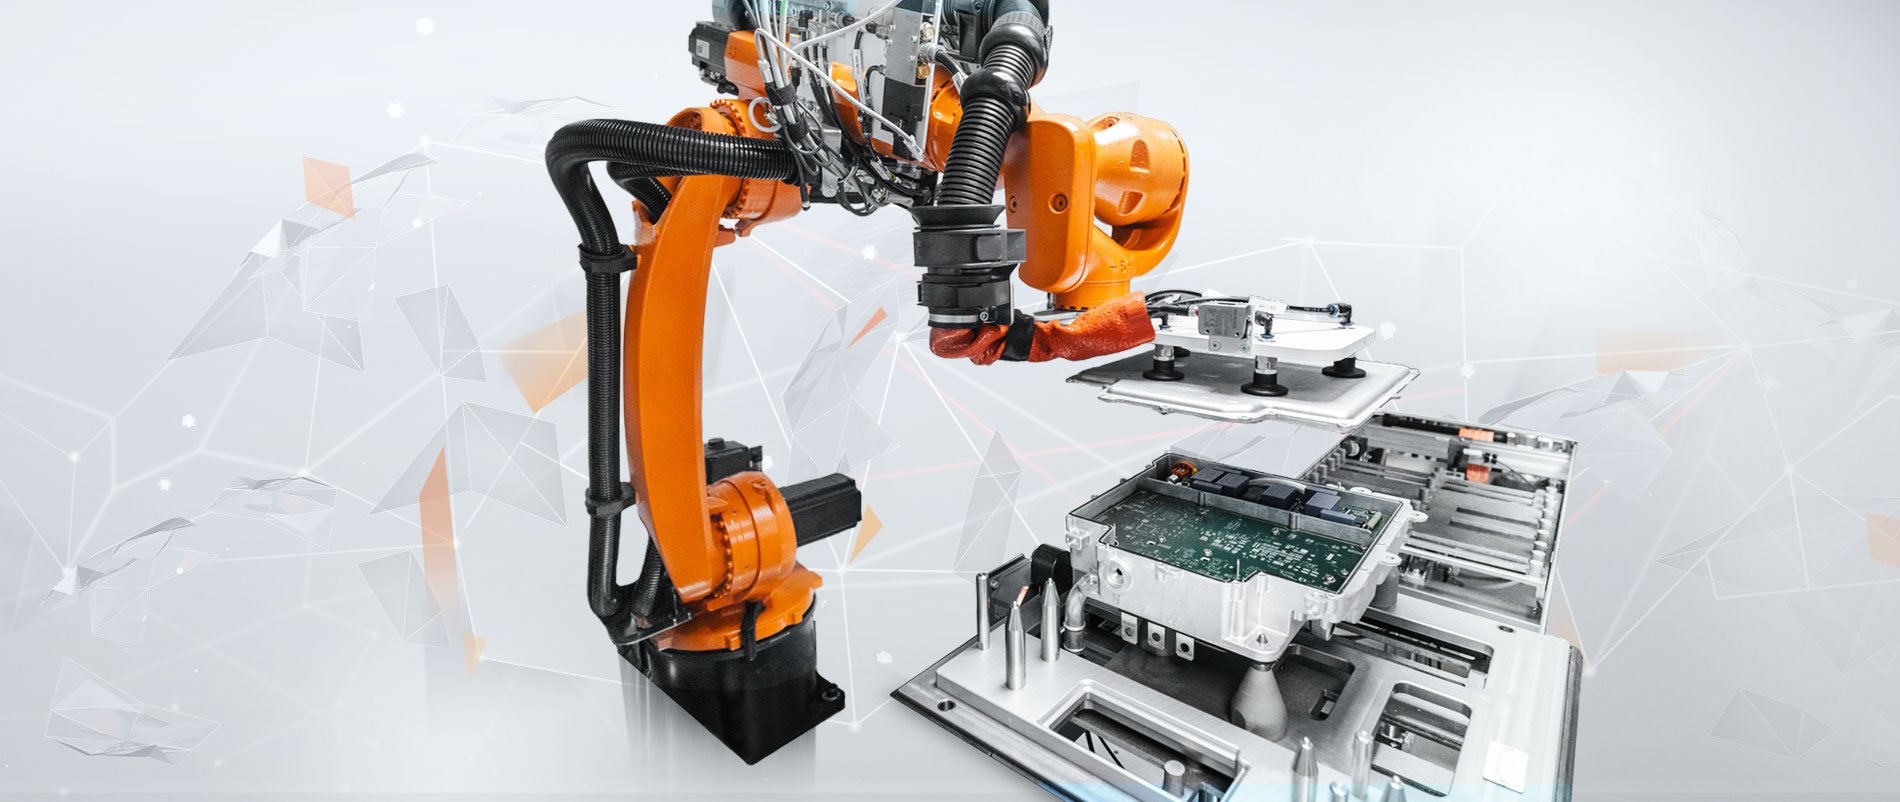 KUKA robot manufactures automotive electronics